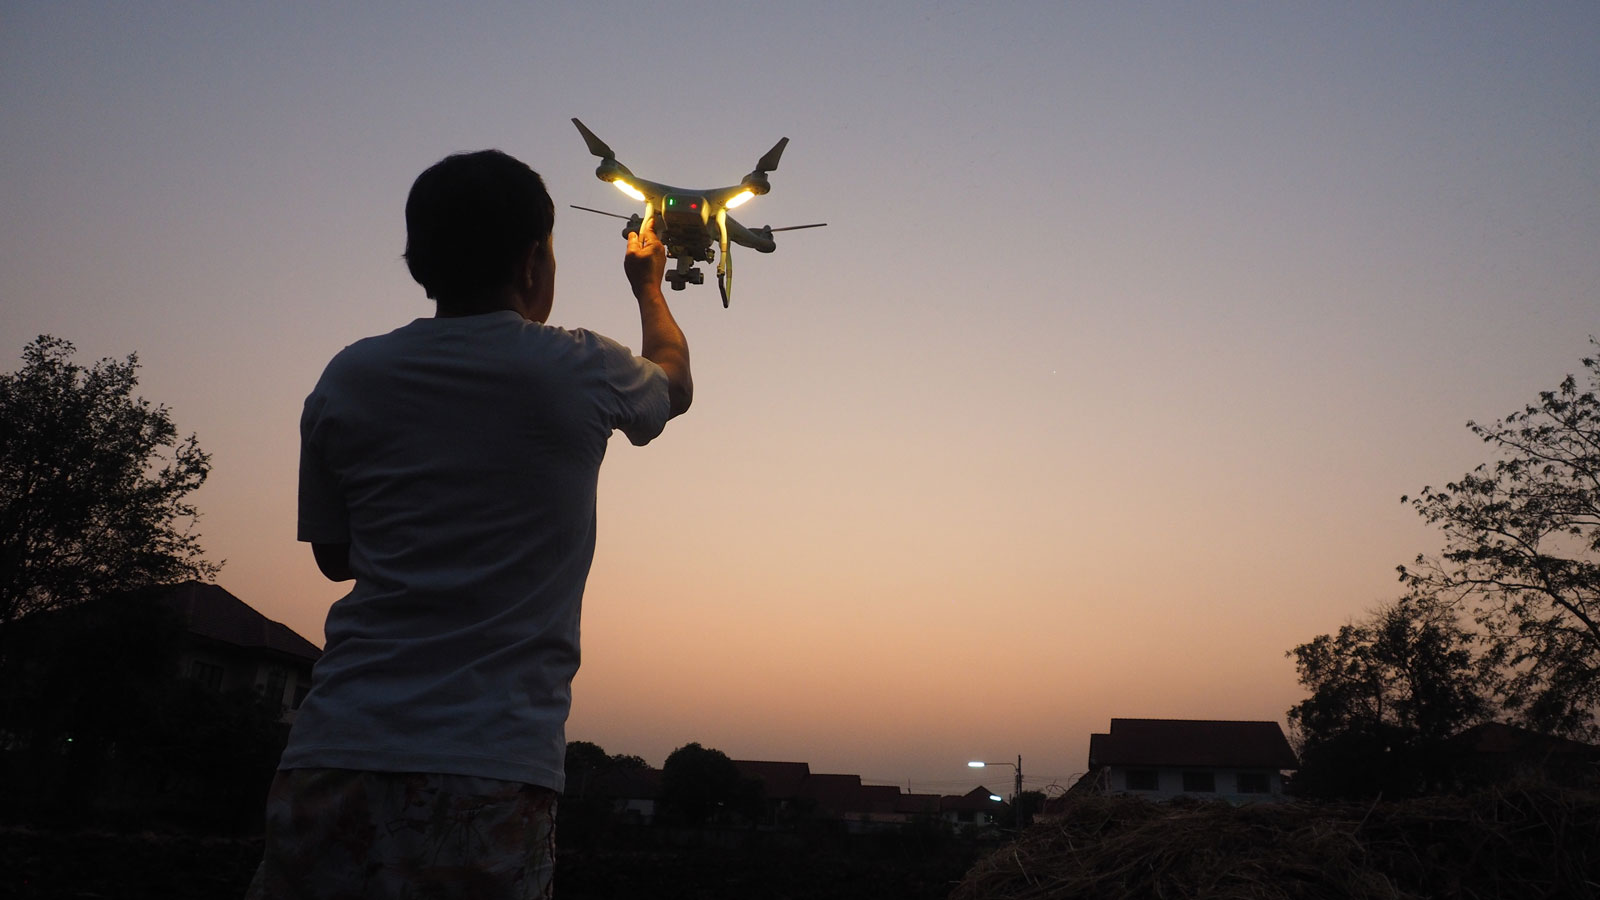 Les dette før du skaffer barnet ditt en drone | Barnevakten